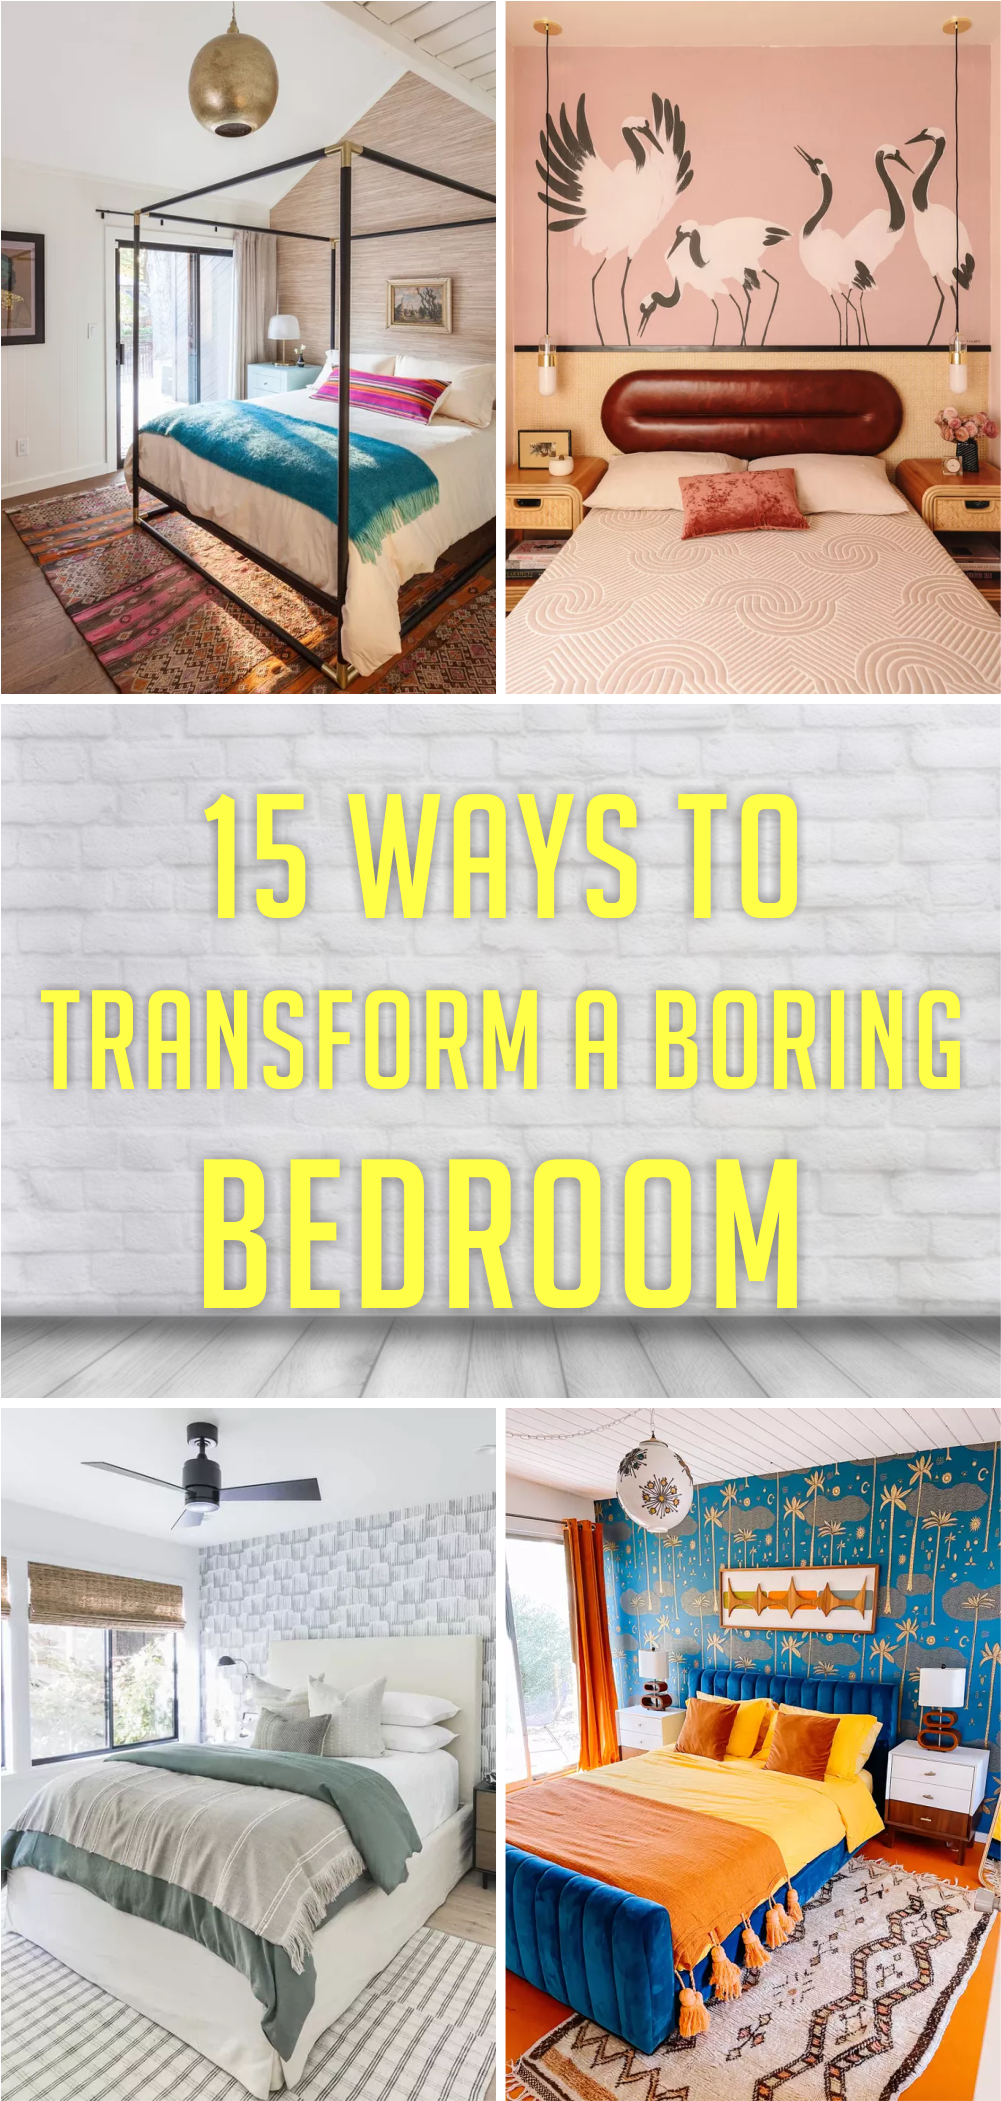 15 Ways to Transform a Boring Bedroom